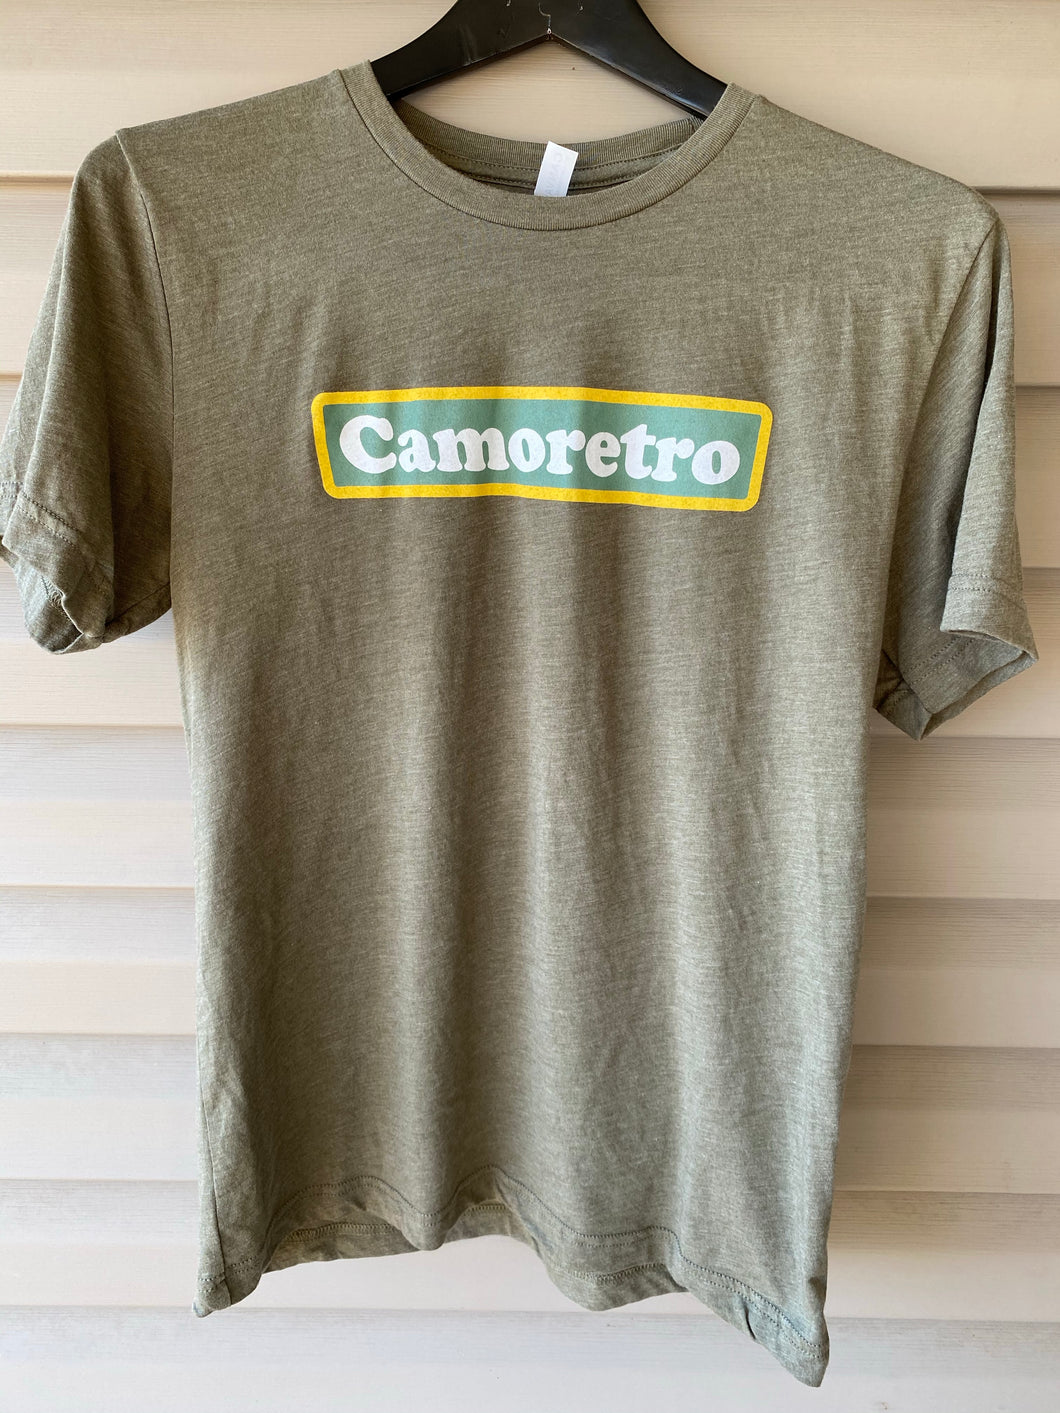 Camoretro Shirt (M)